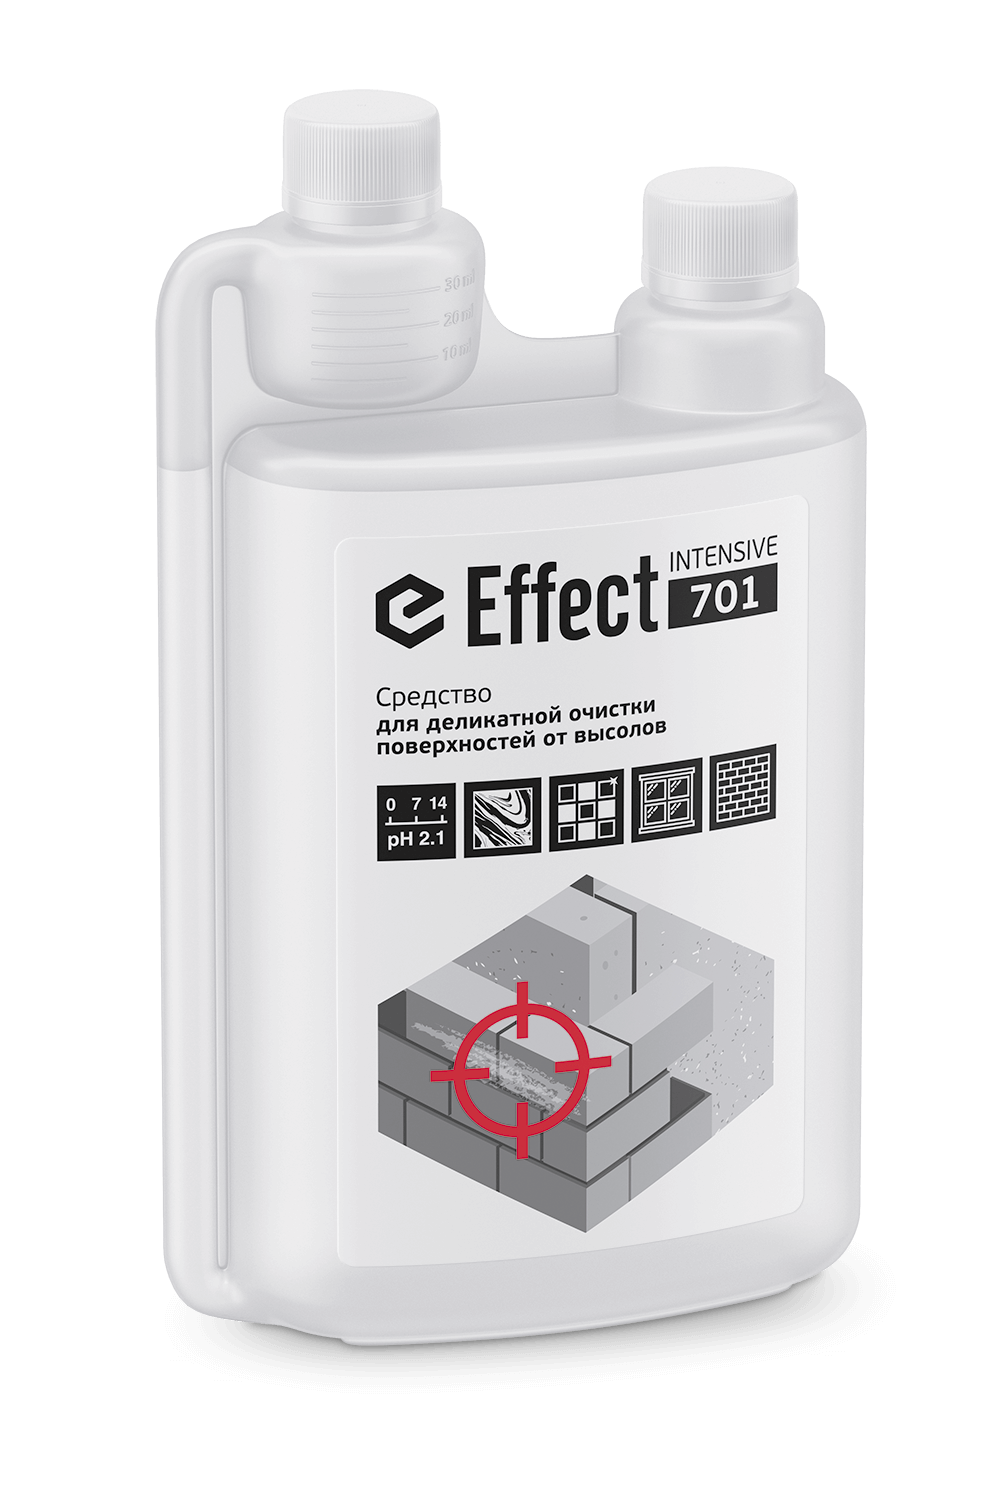                 Effect Интенсив 701 для деликатной очистки поверхностей отвысолов 1л(5)